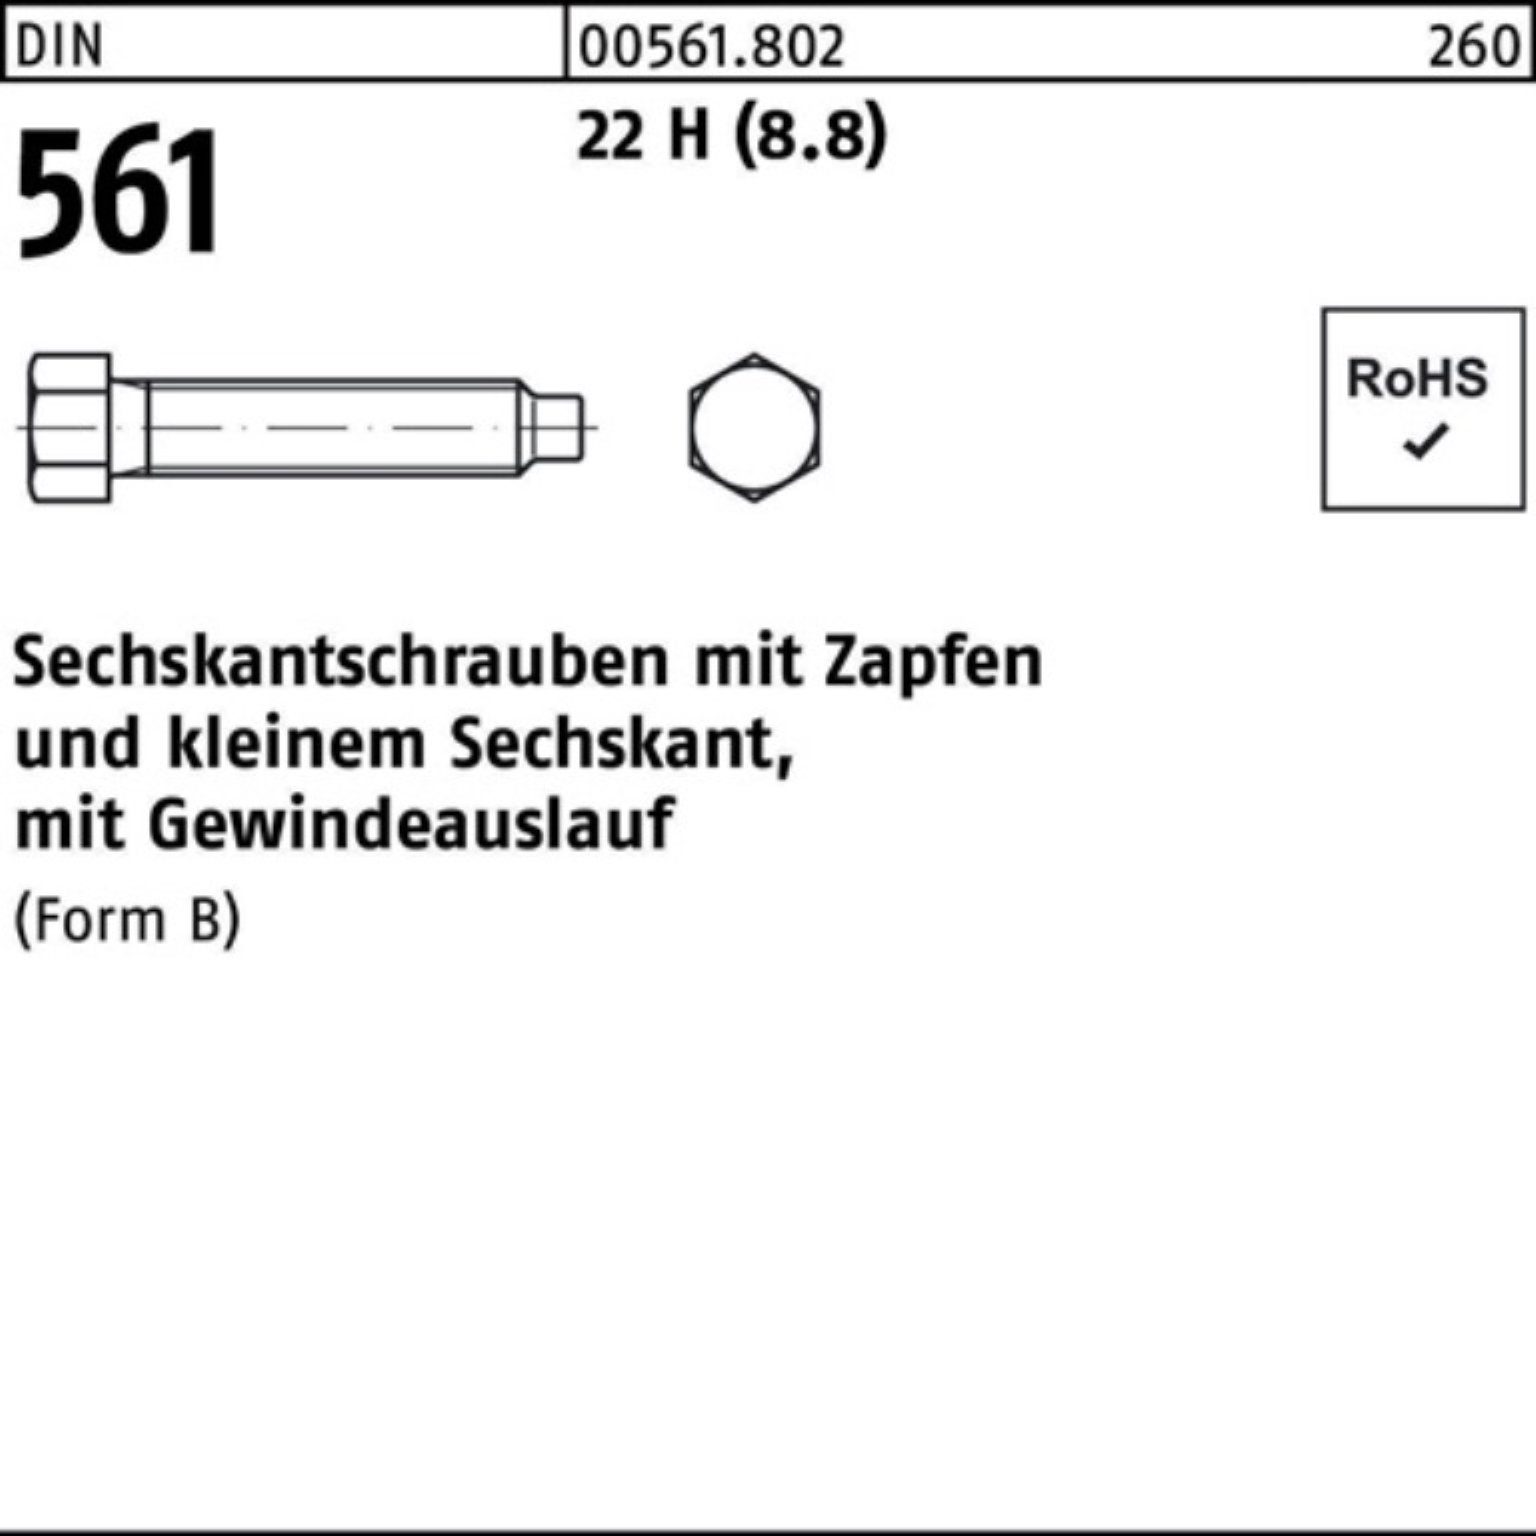 H Sechskantschraube 561 BM 22 70 (8.8) Zapfen Pack Reyher 12x DIN 100er St 25 Sechskantschraube